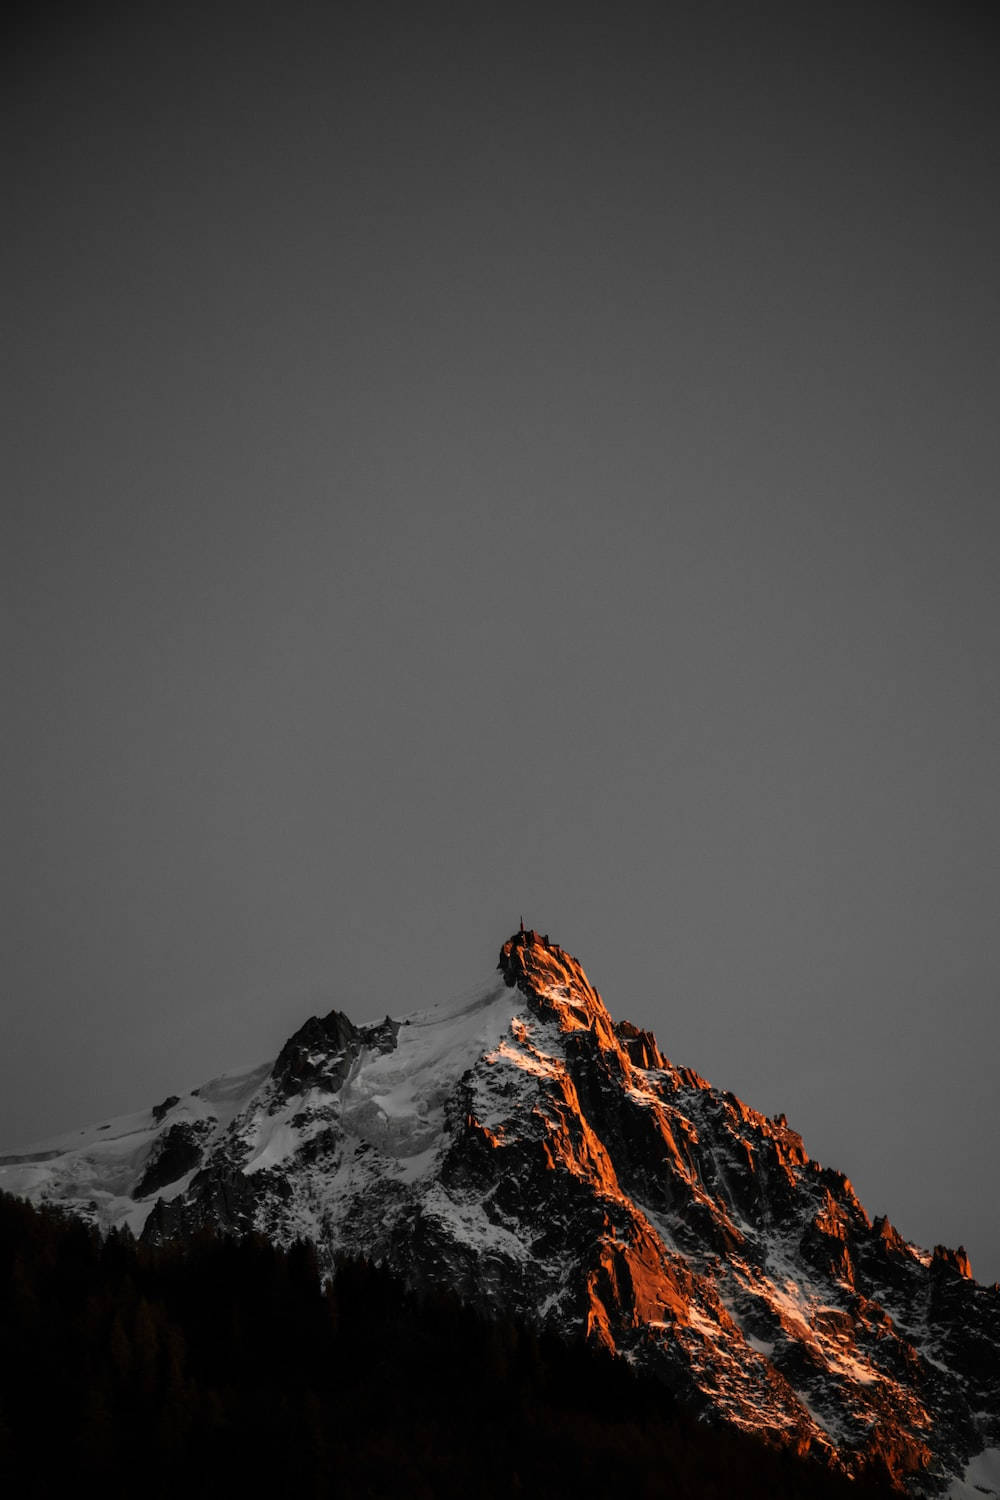 The Best HD Phone Snowy Mountain Peak Wallpaper